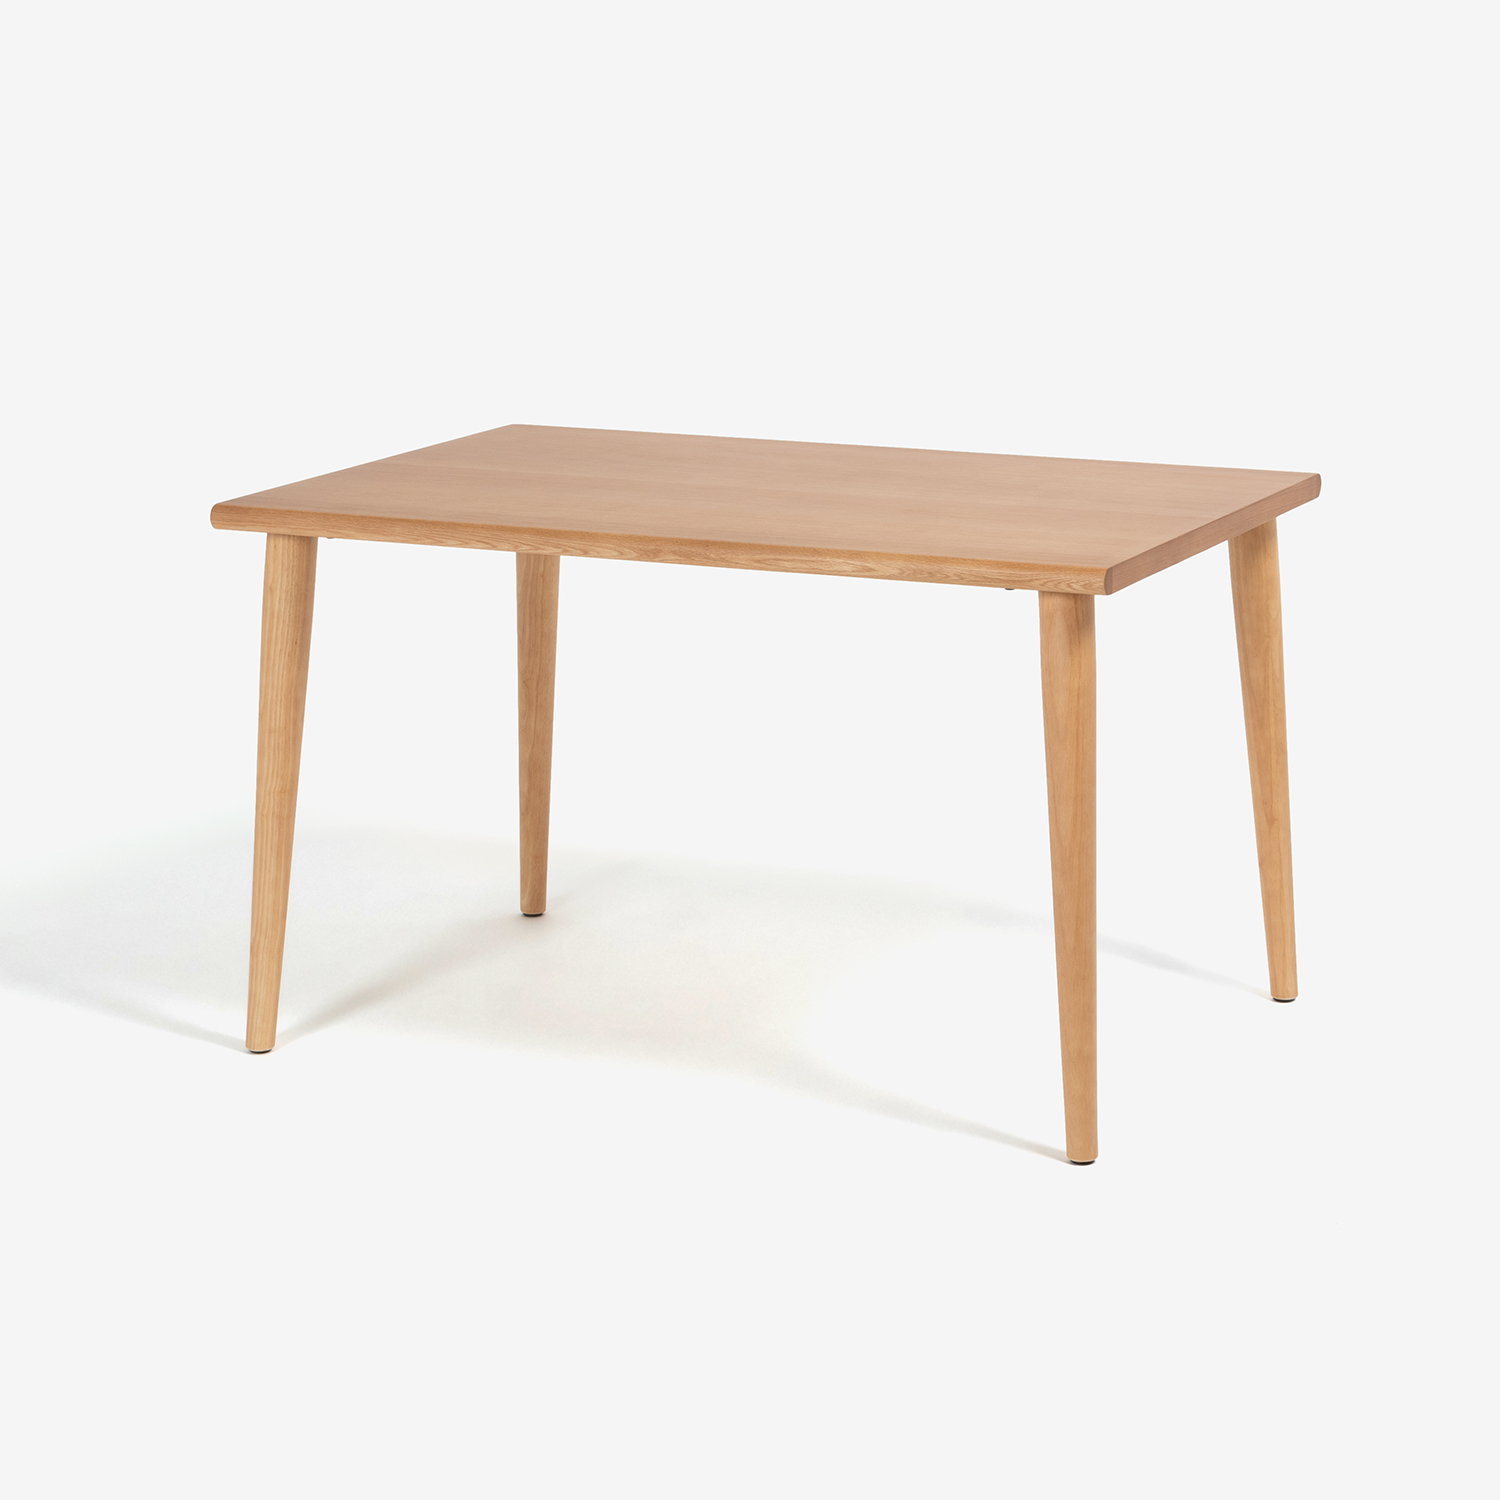 ダイニングテーブル「ユノ3」レッドオーク材 ホワイトオーク色 丸脚 全3サイズ